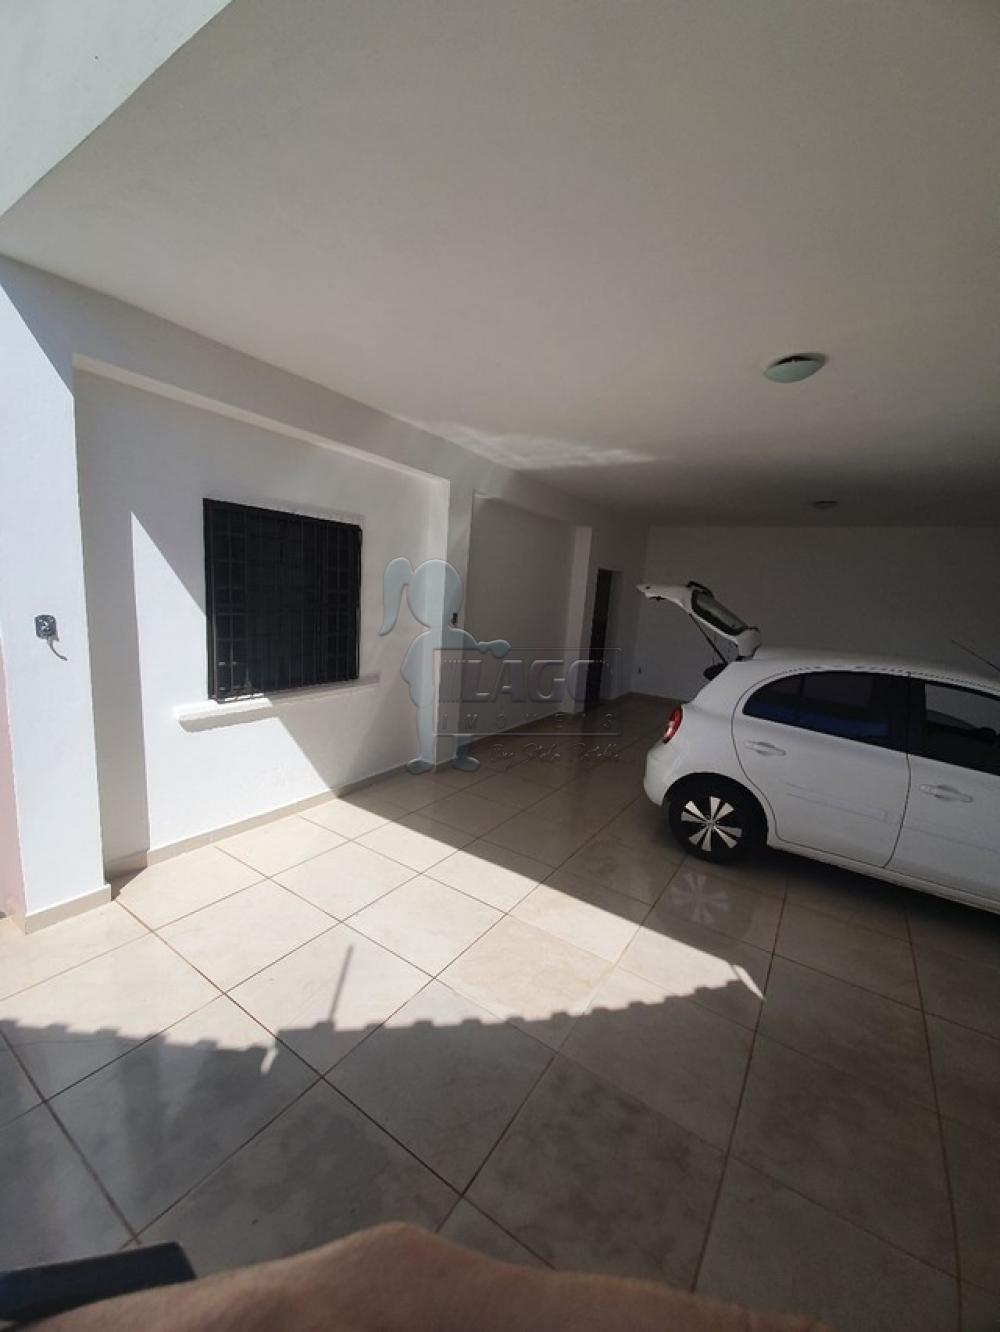 Comprar Casas / Padrão em Ribeirão Preto R$ 318.000,00 - Foto 9